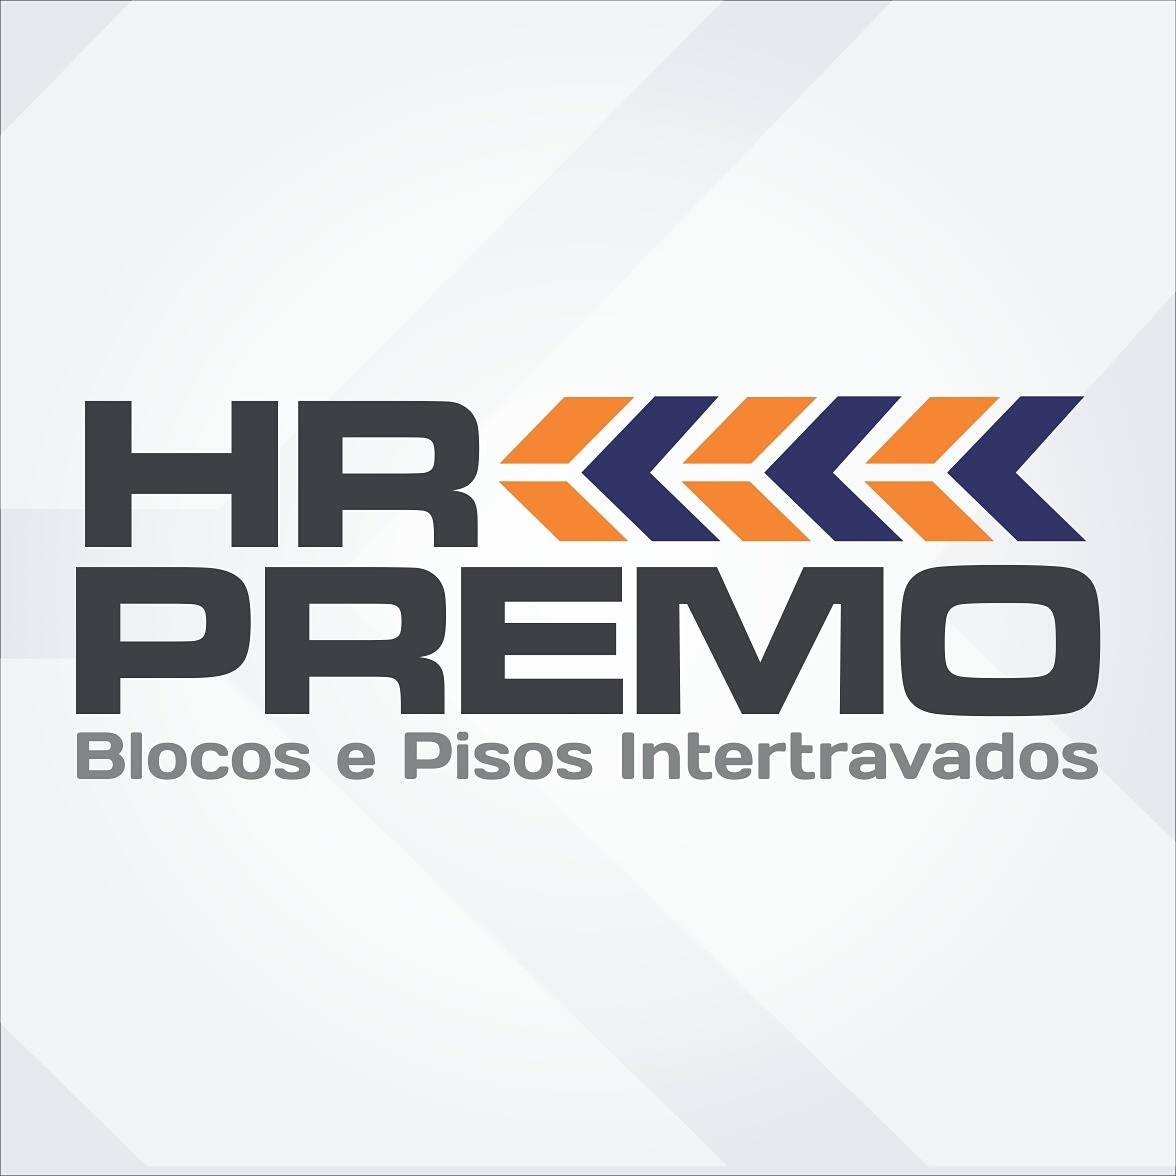 HR PREMO - BLOCOS E PISOS INTERTRAVADOS - Pisos Intertravados - Juiz de Fora, MG